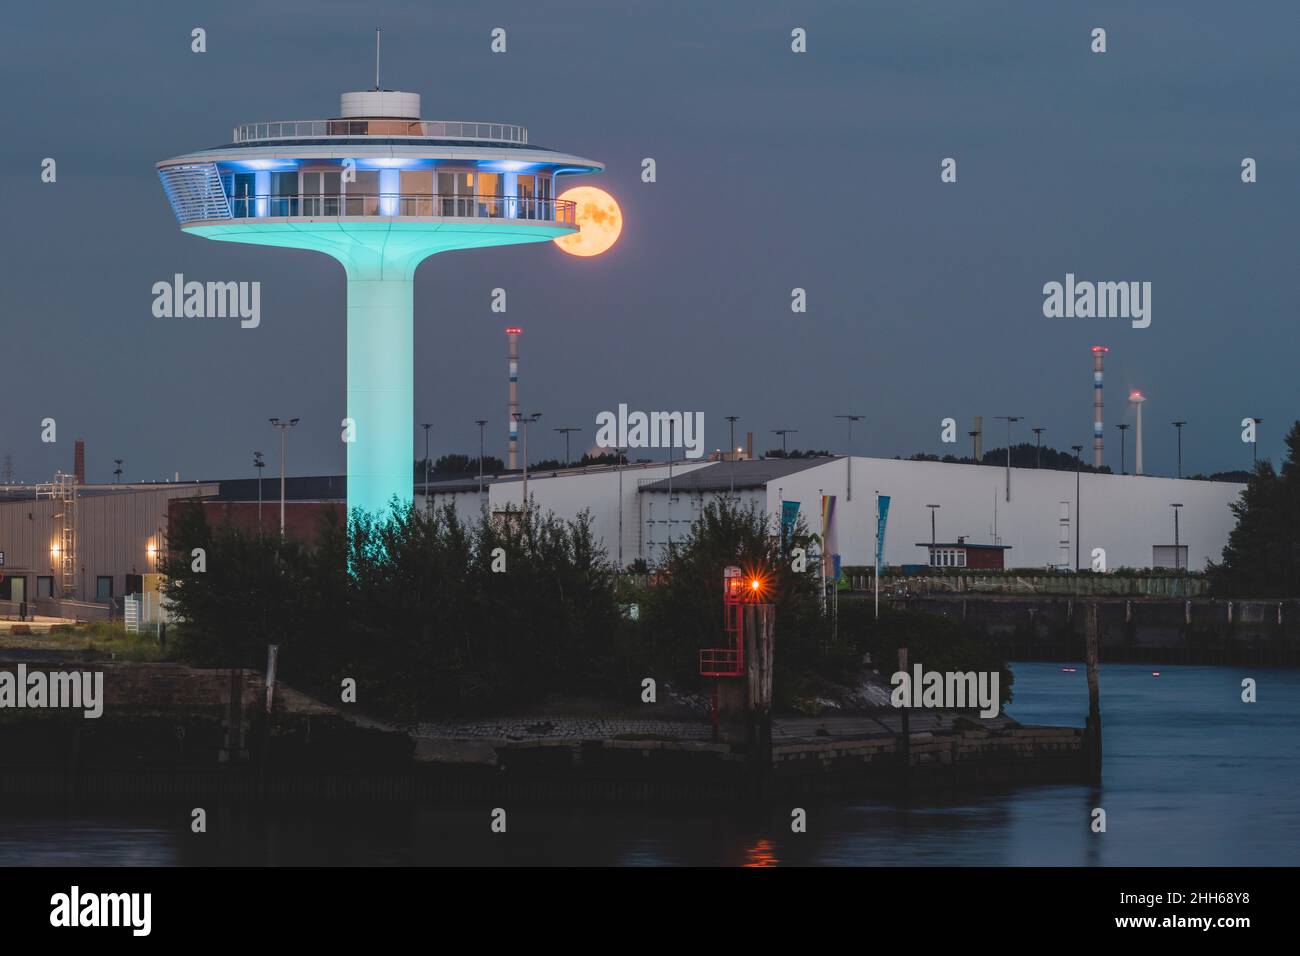 Alemania, Hamburgo, Faro cero edificio por la noche con la luna llena ominosa en el fondo Foto de stock